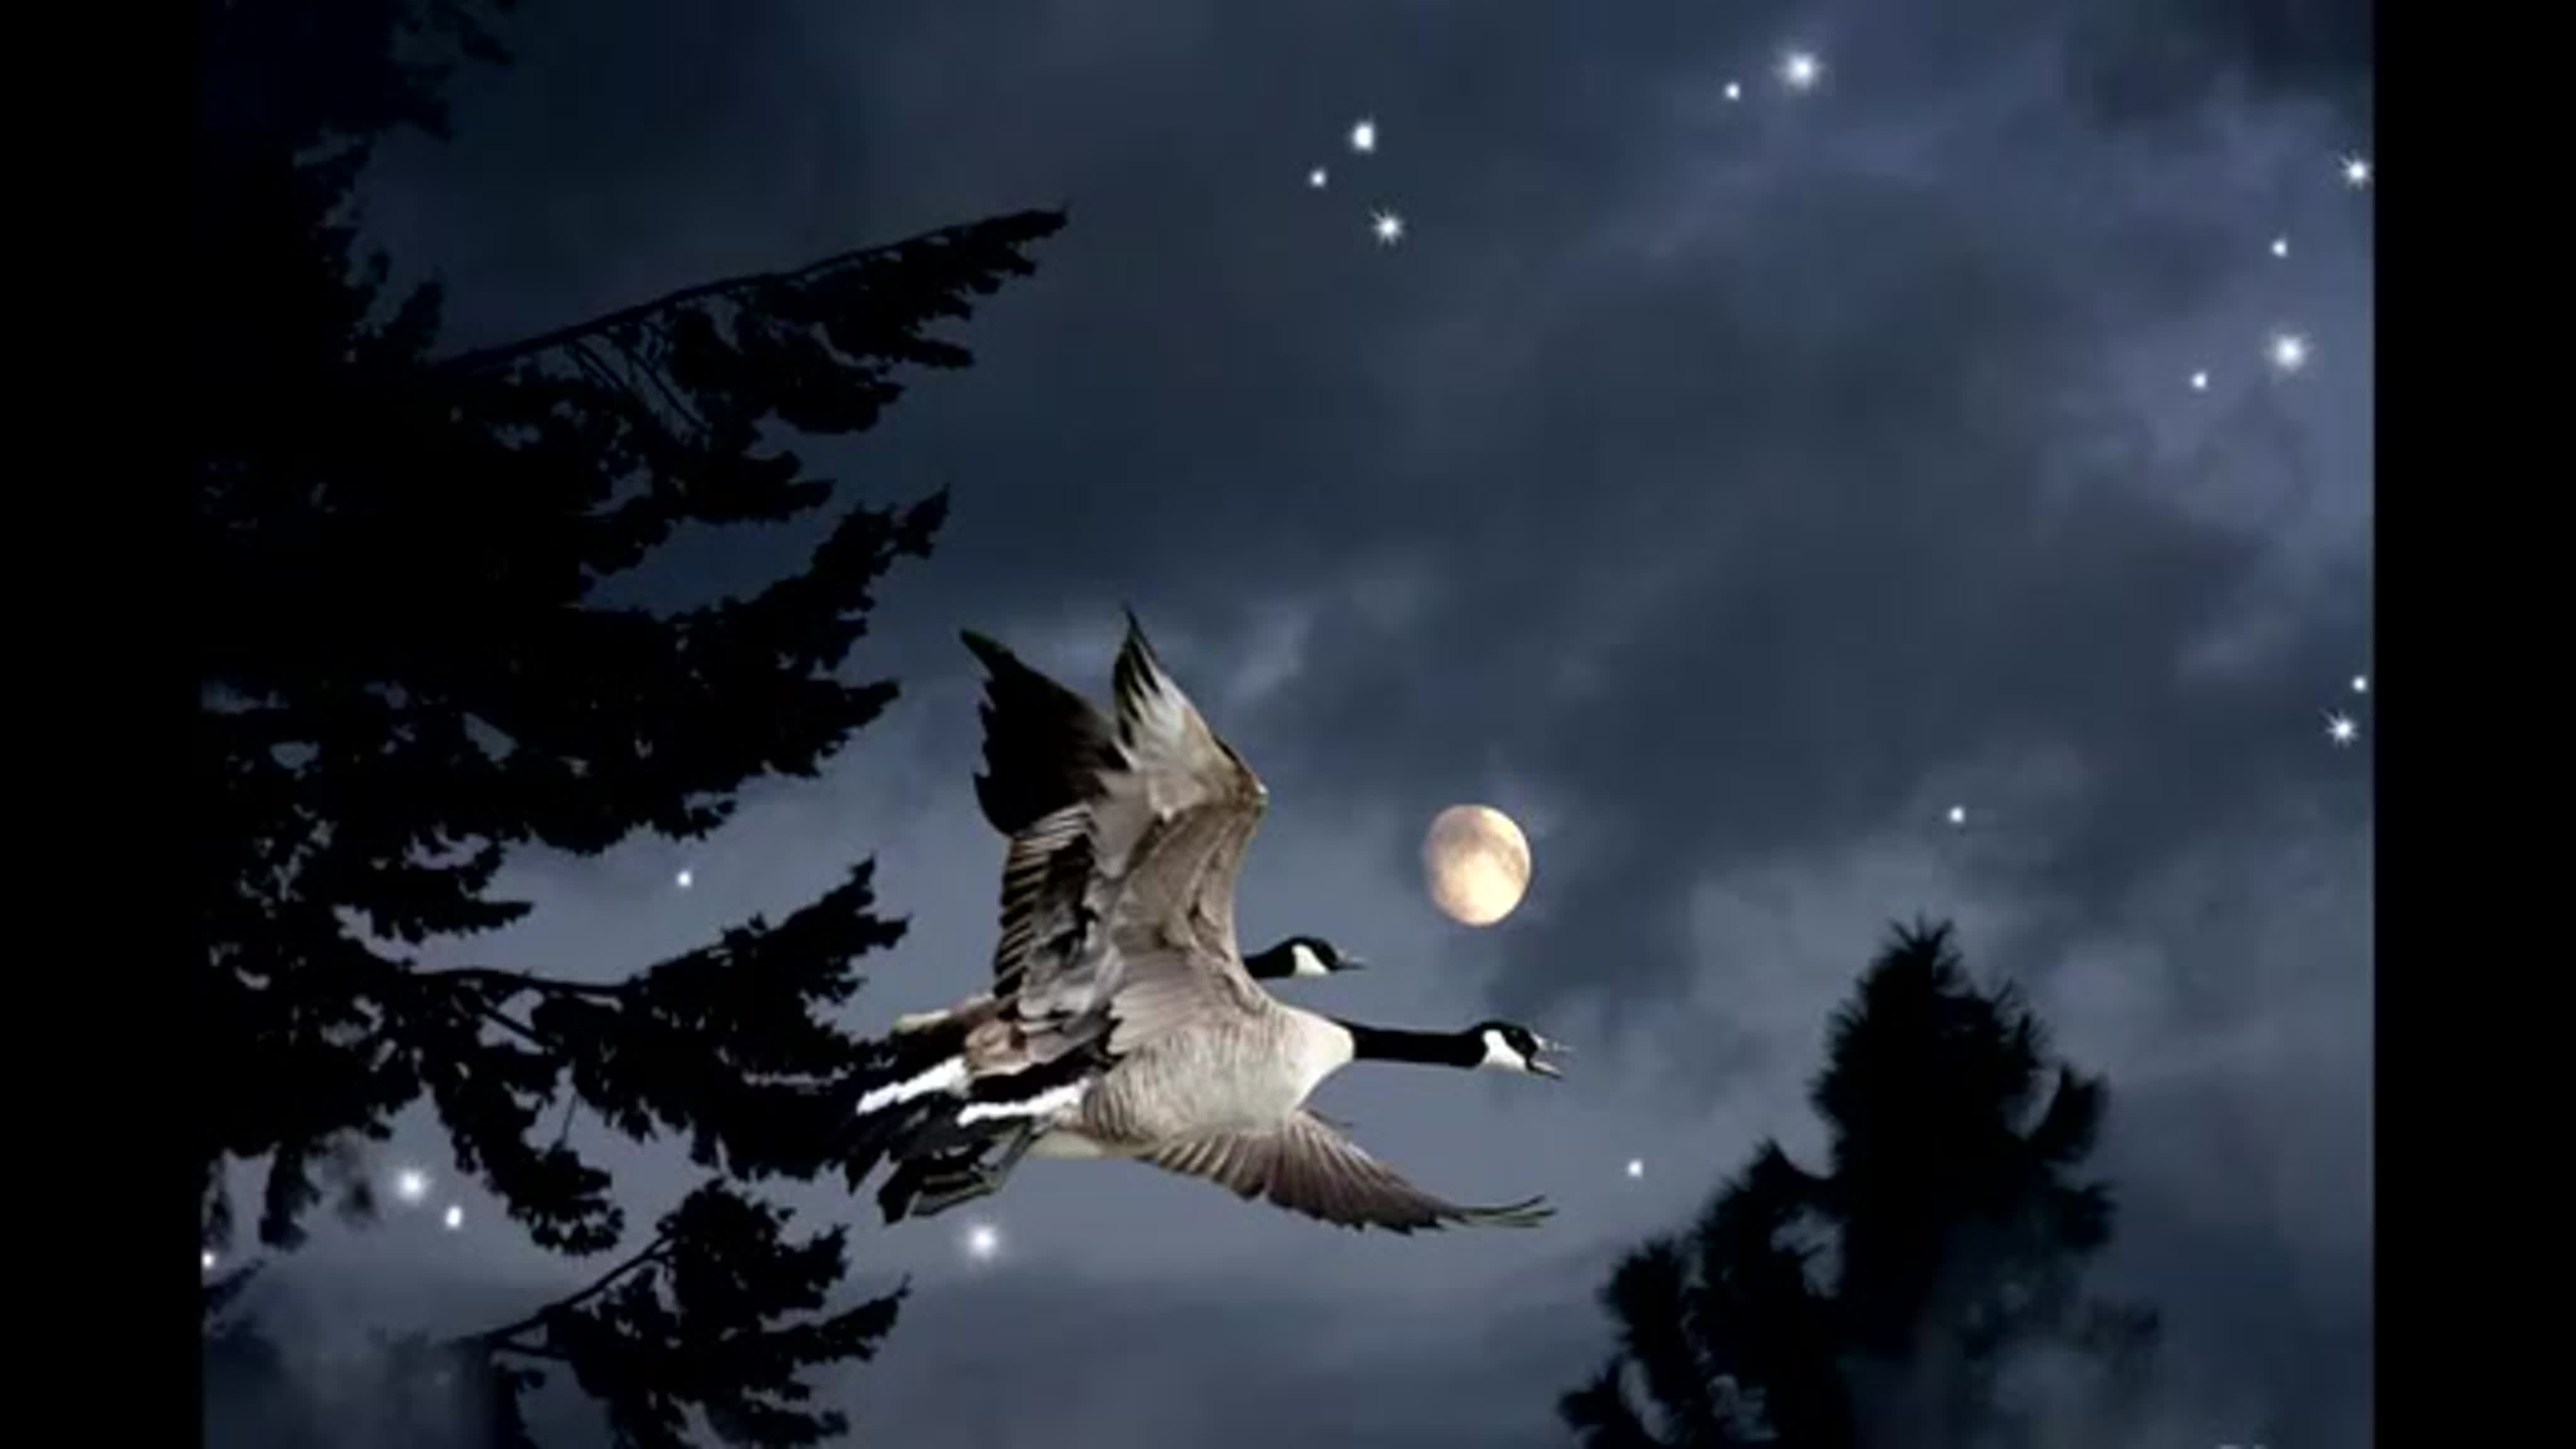 Ночная жизнь птиц